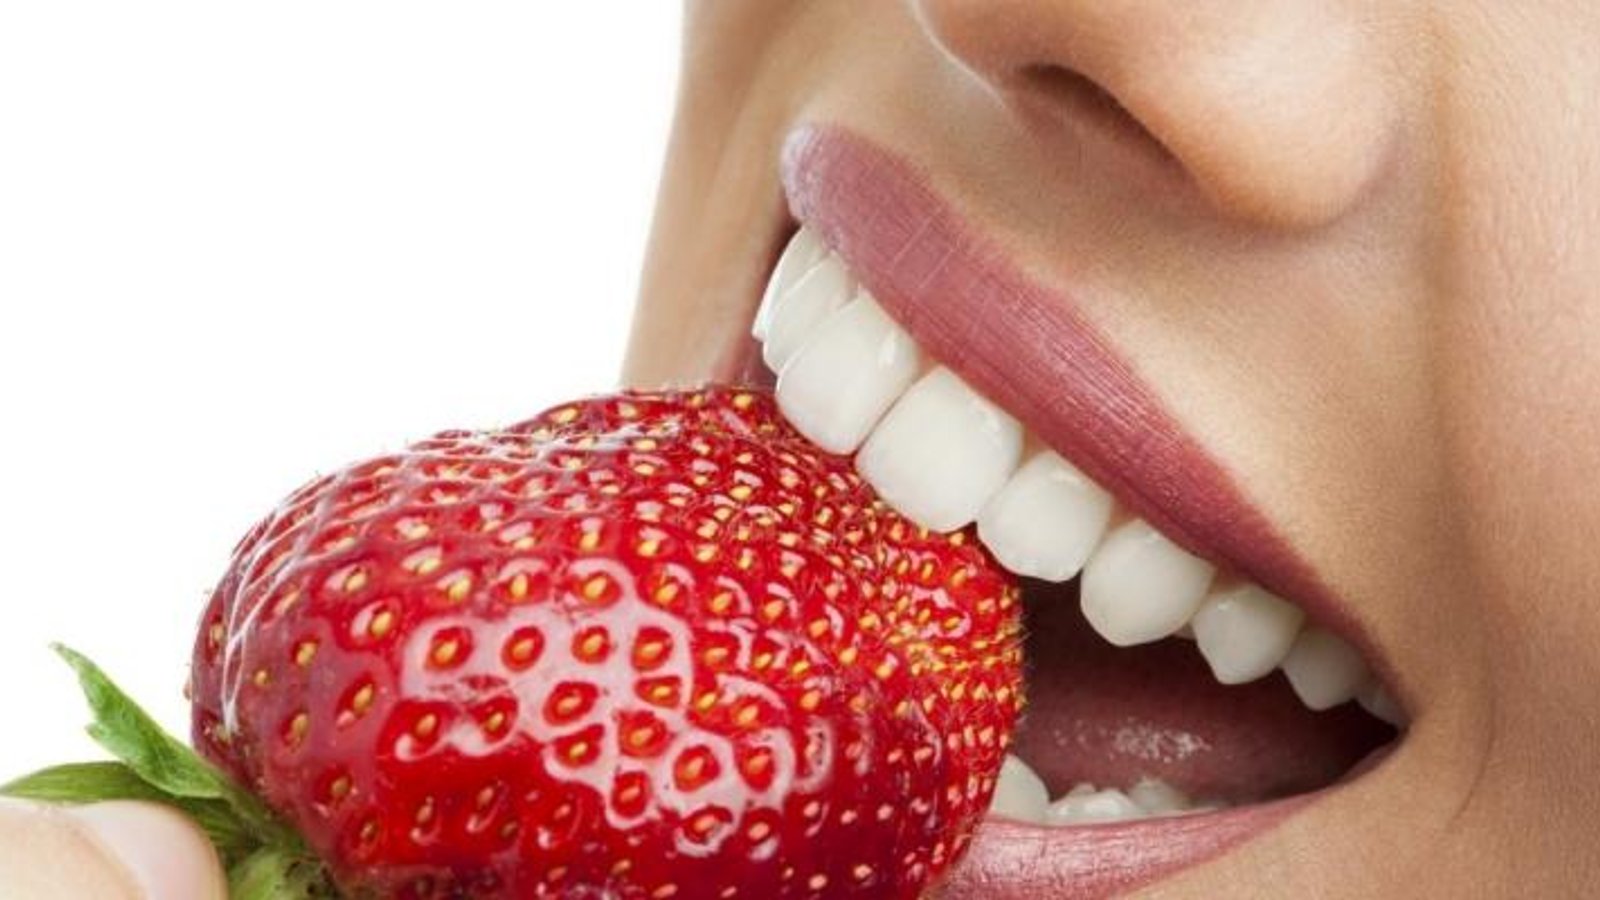 Voilà ce qui arrive à votre corps quand vous mangez des fraises